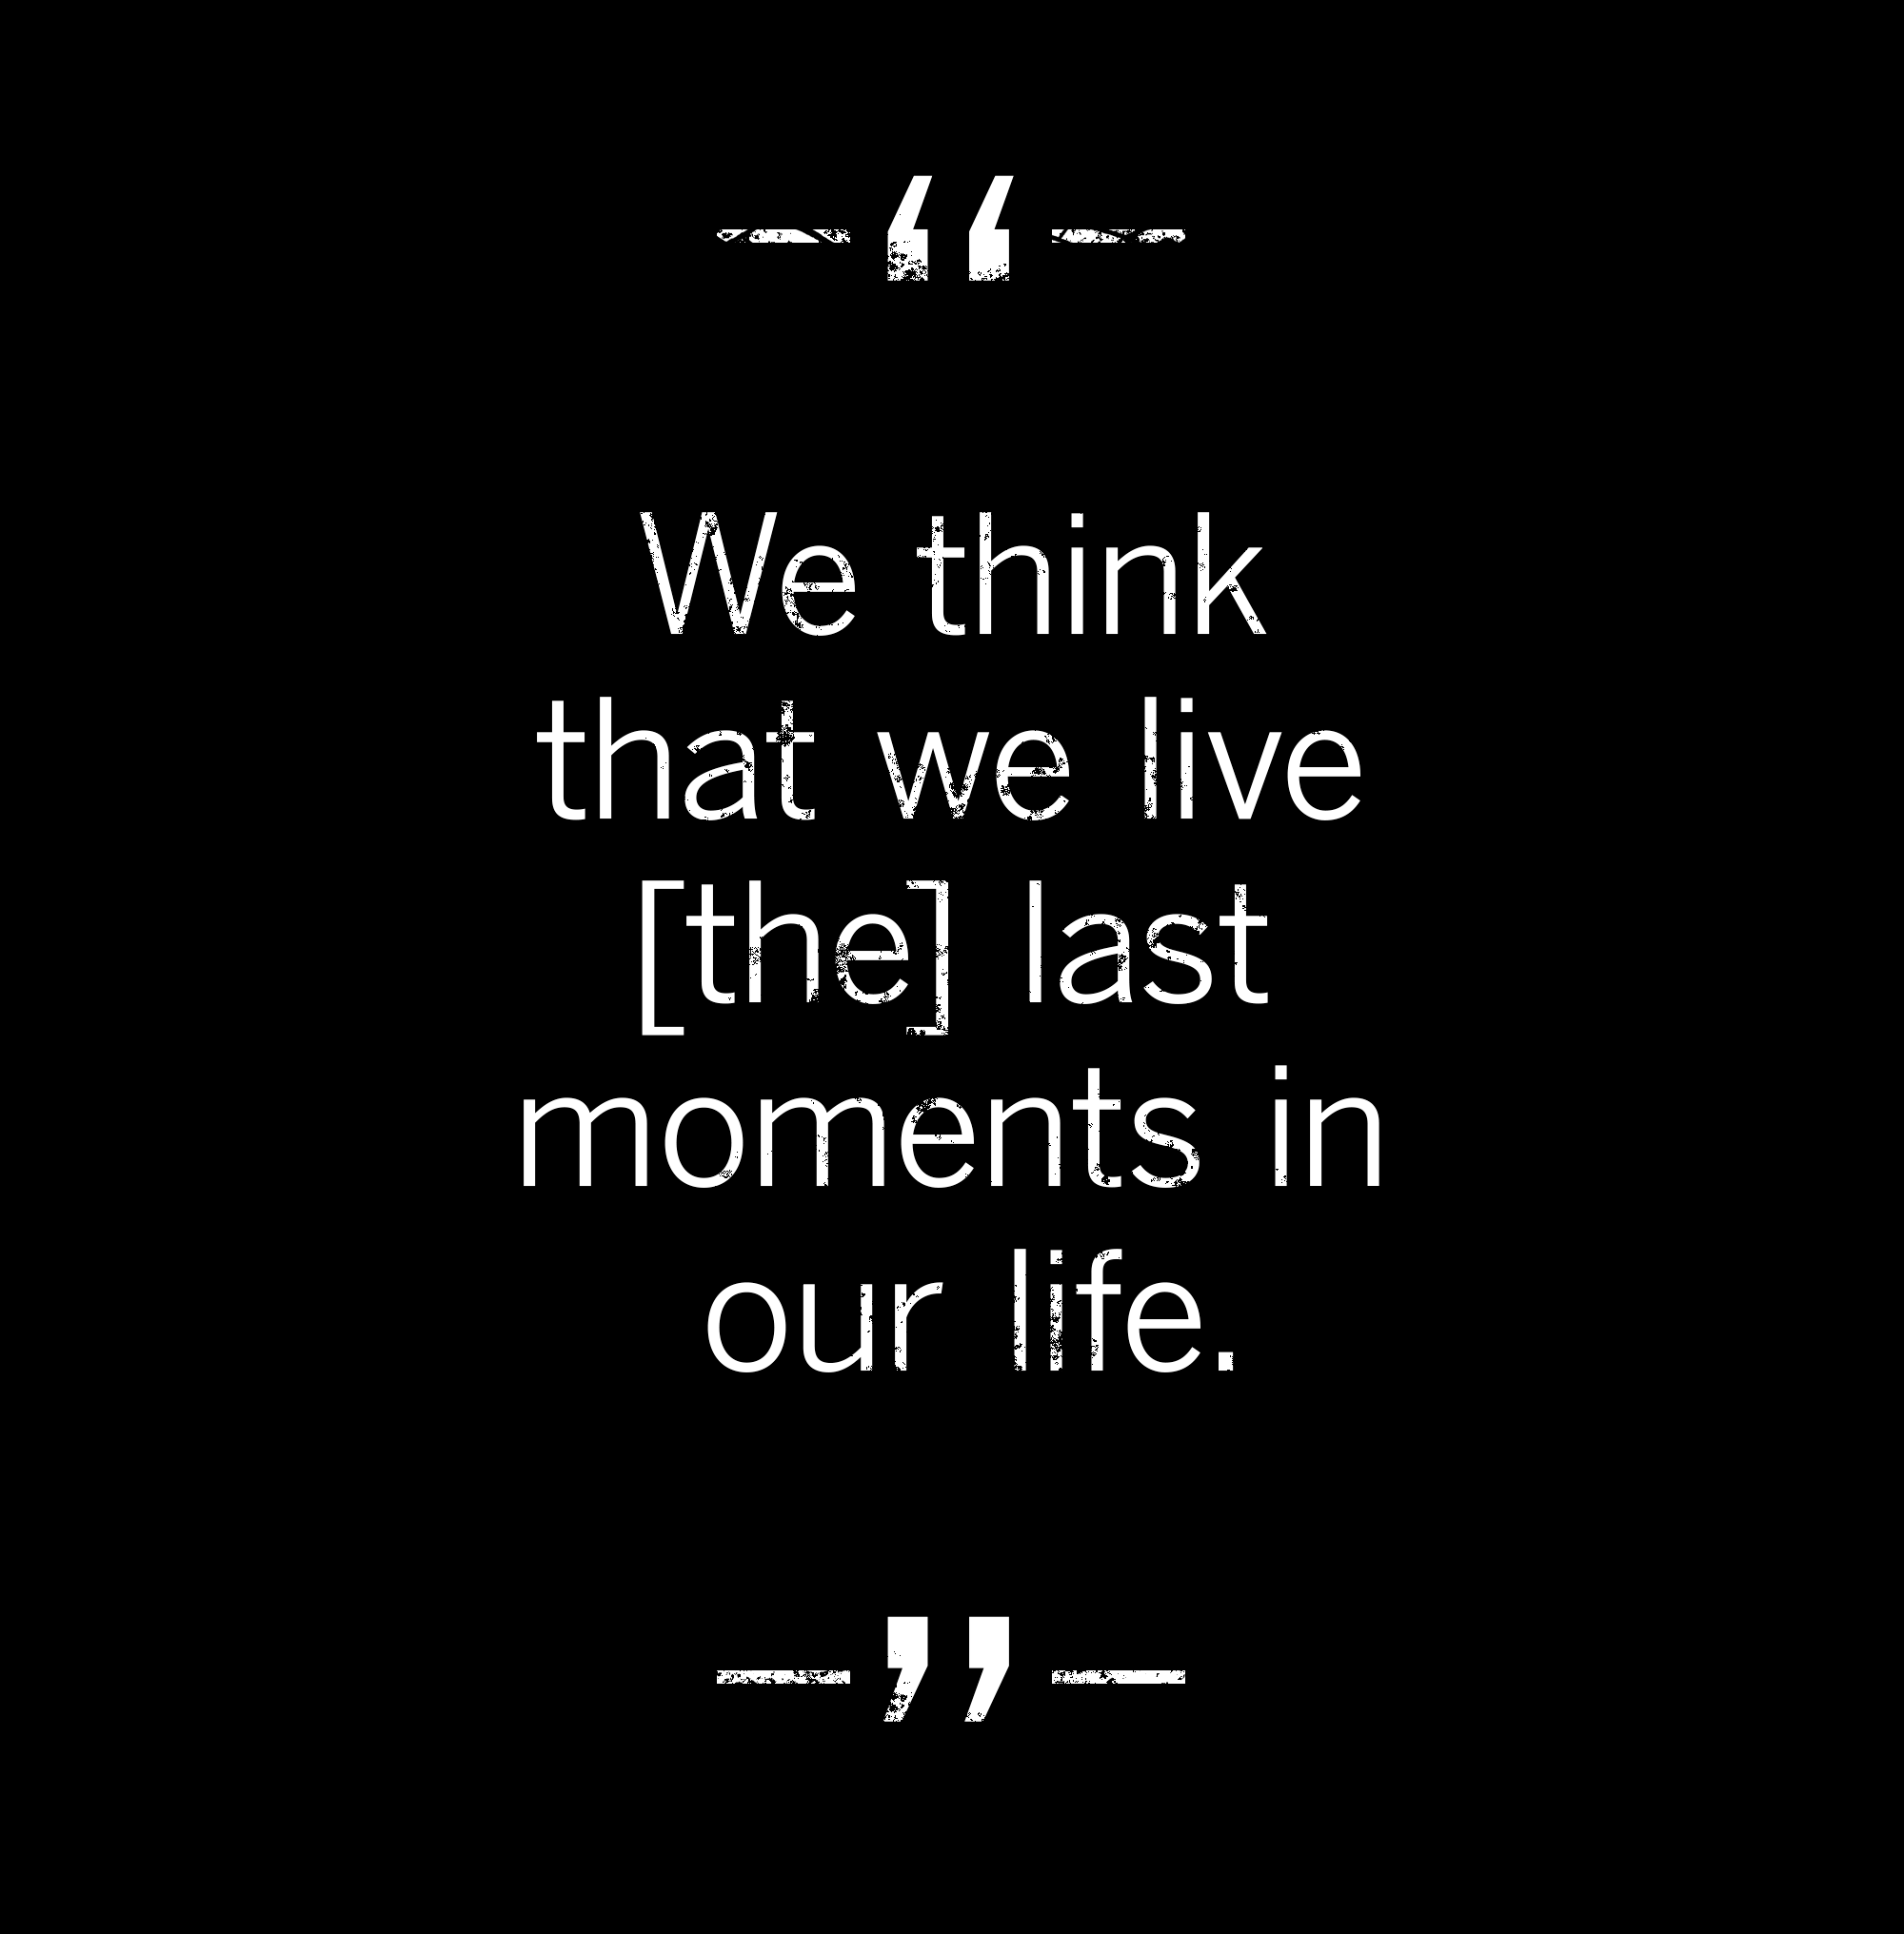 citation : Nous pensons que nous vivons les derniers instants de notre vie